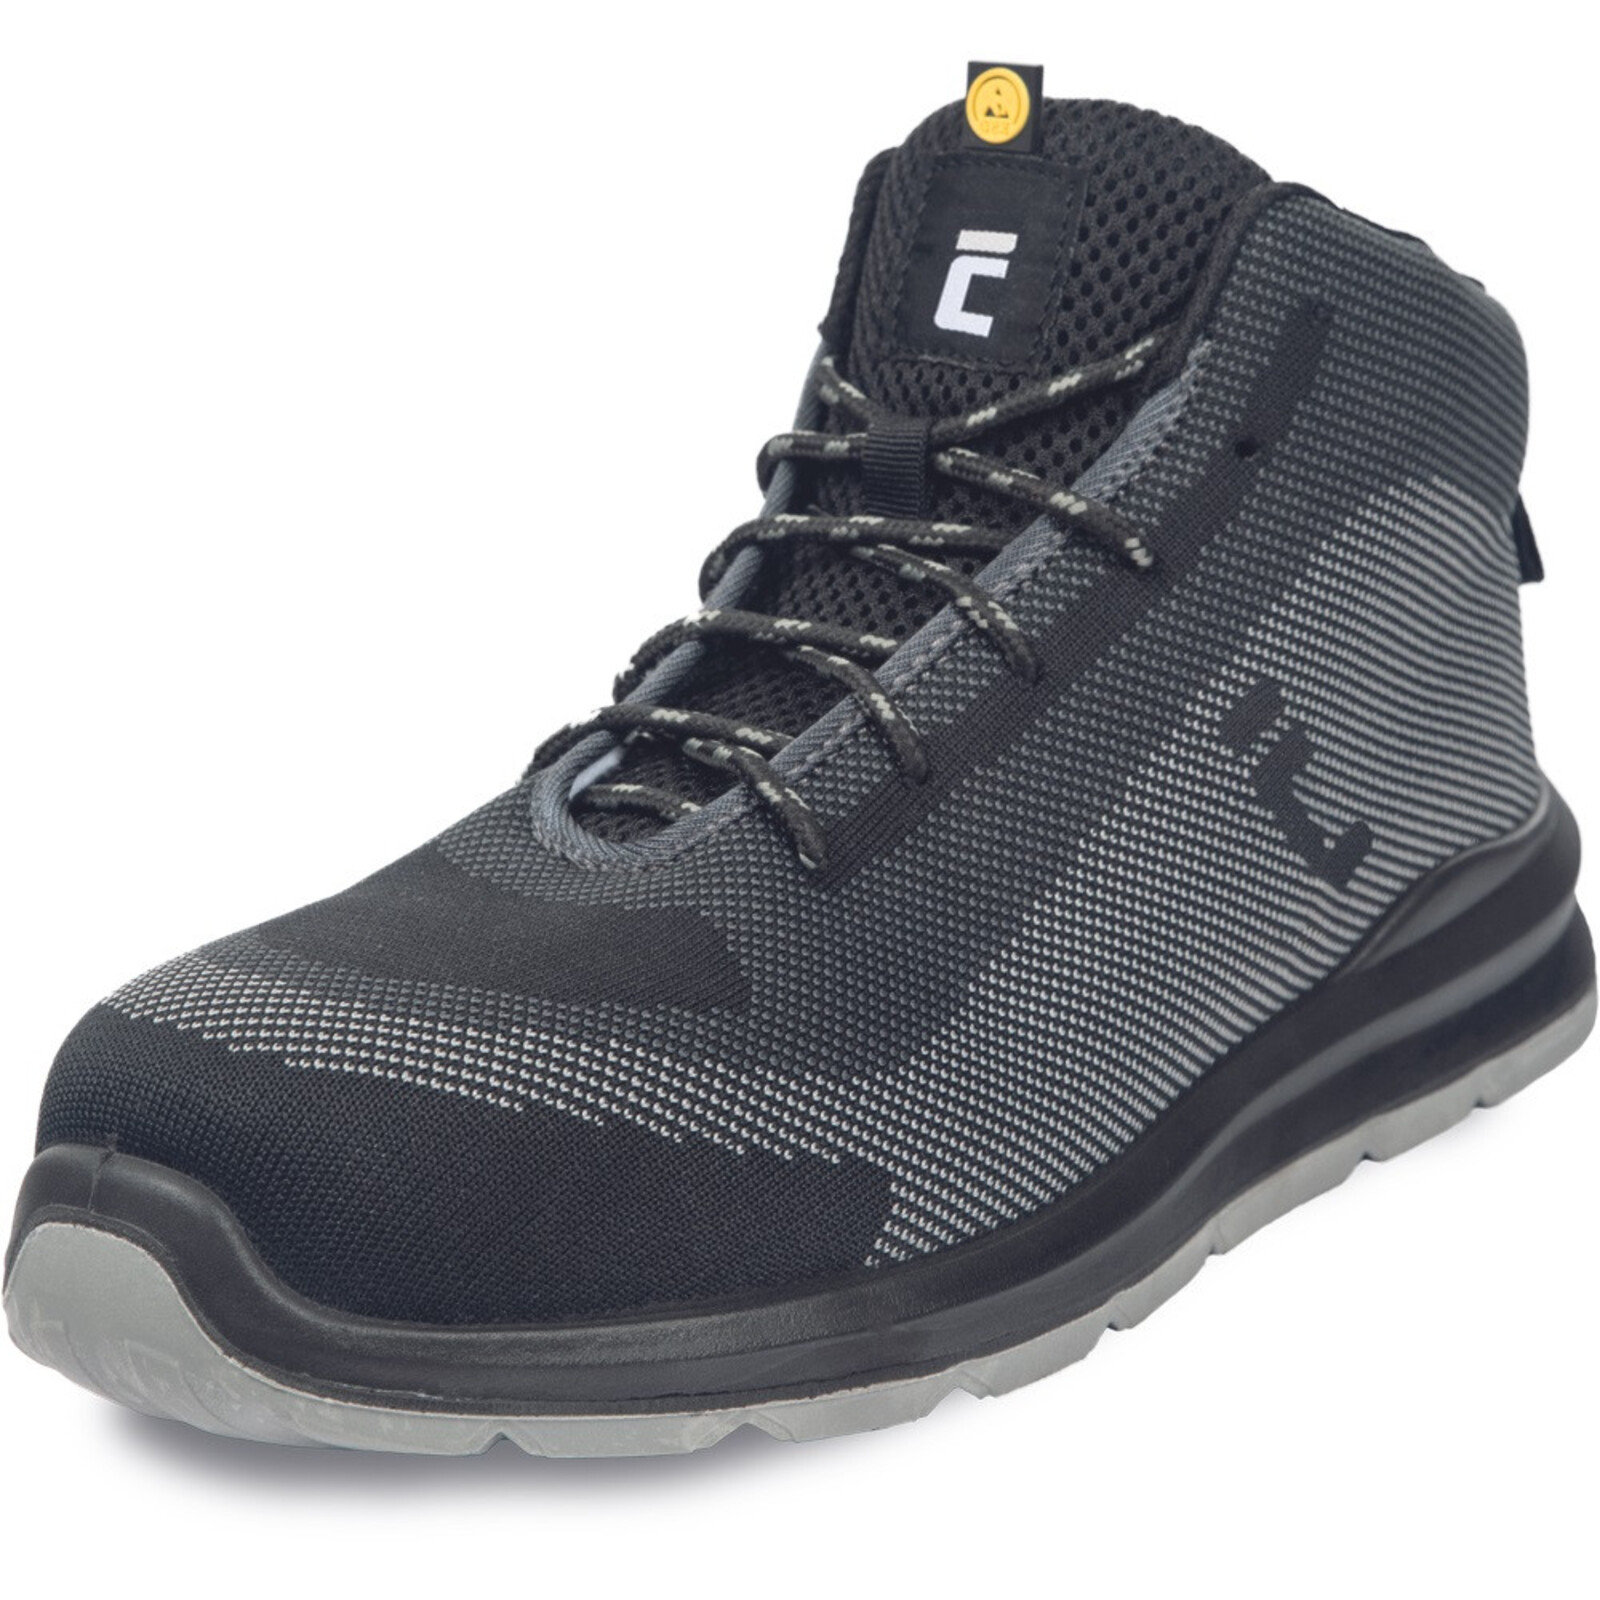 Bezpečnostná členková obuv Cerva Vadorros S1P MF ESD SRC - veľkosť: 46, farba: sivá/čierna